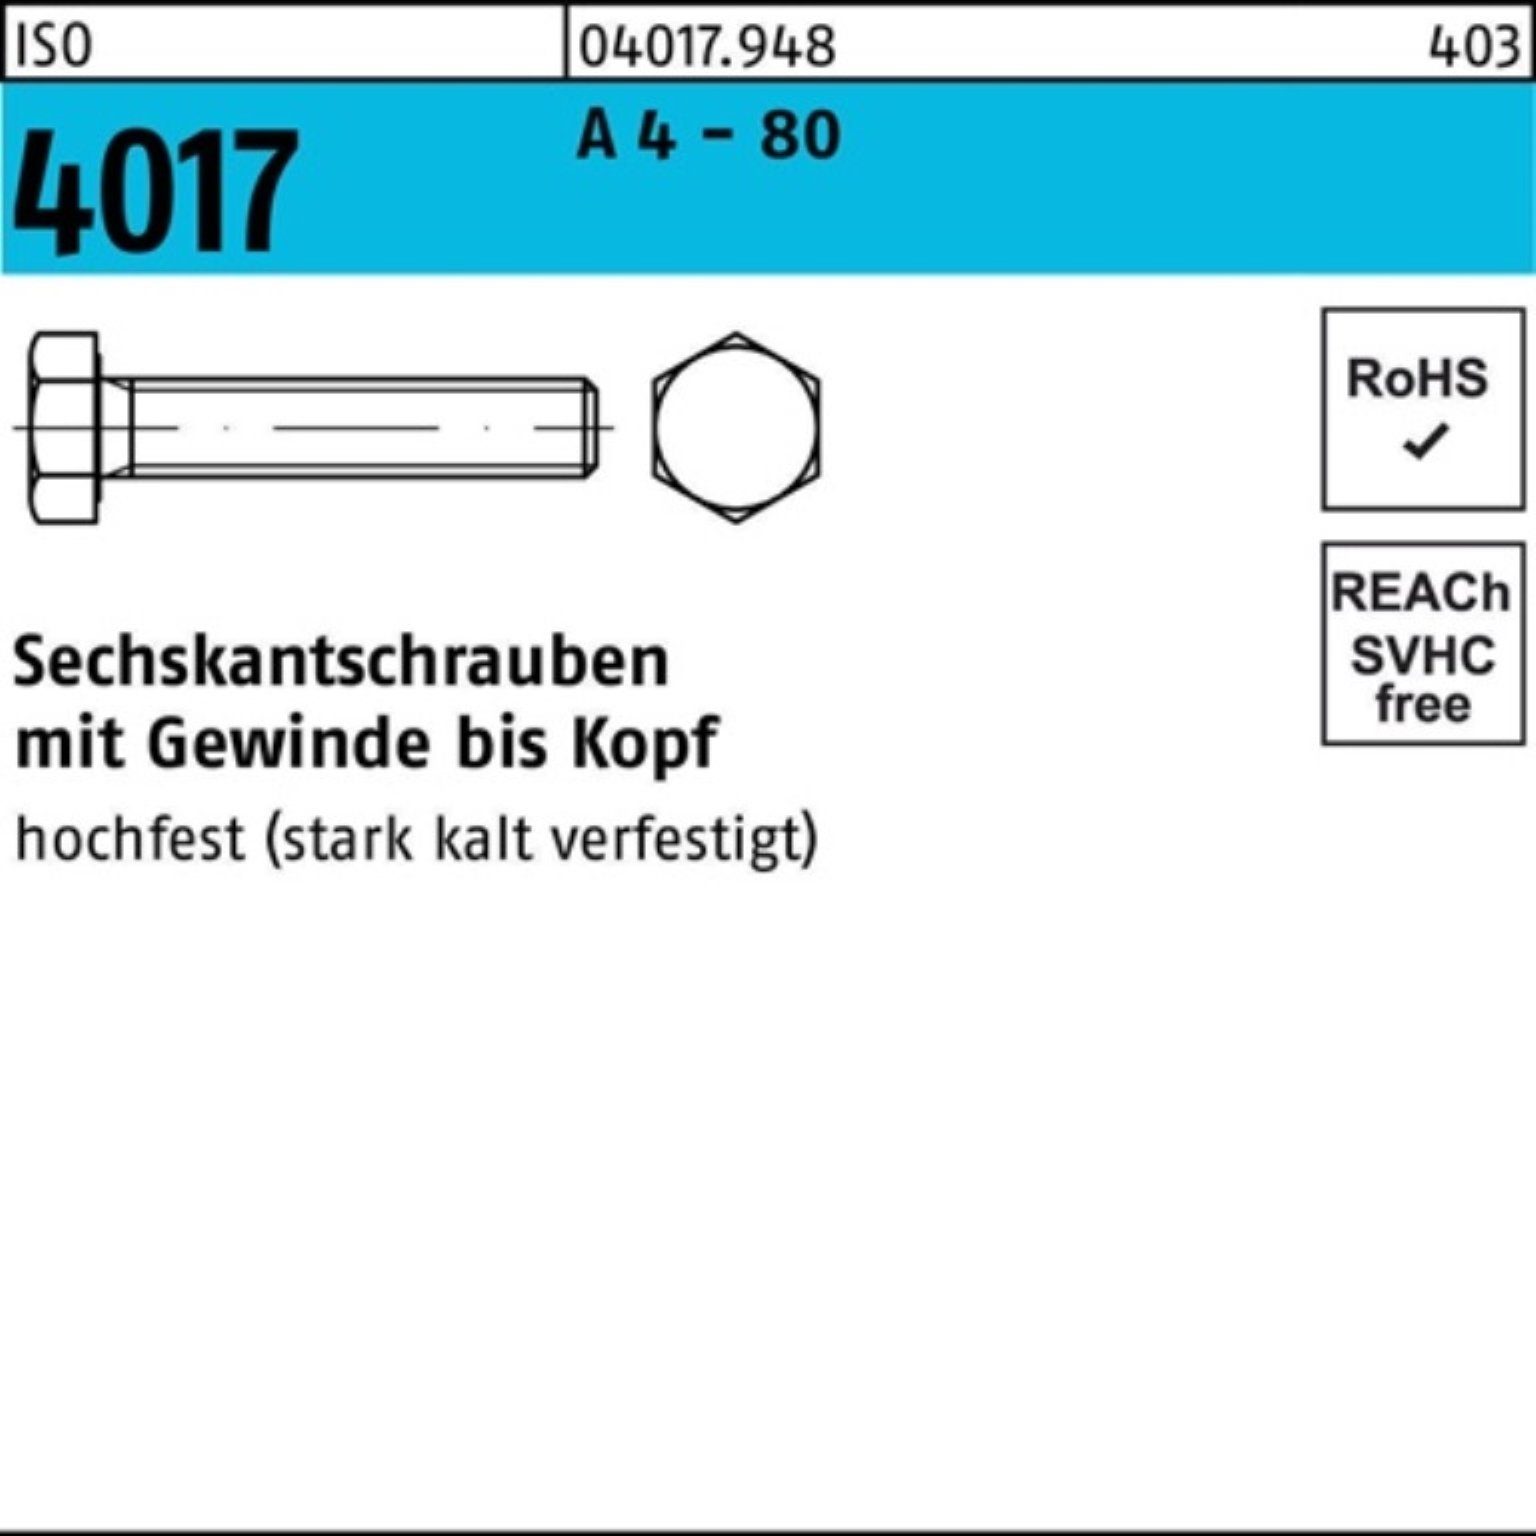 100 IS Pack Sechskantschraube Stück Bufab 80 100er A VG 4 M8x 40 ISO Sechskantschraube - 4017